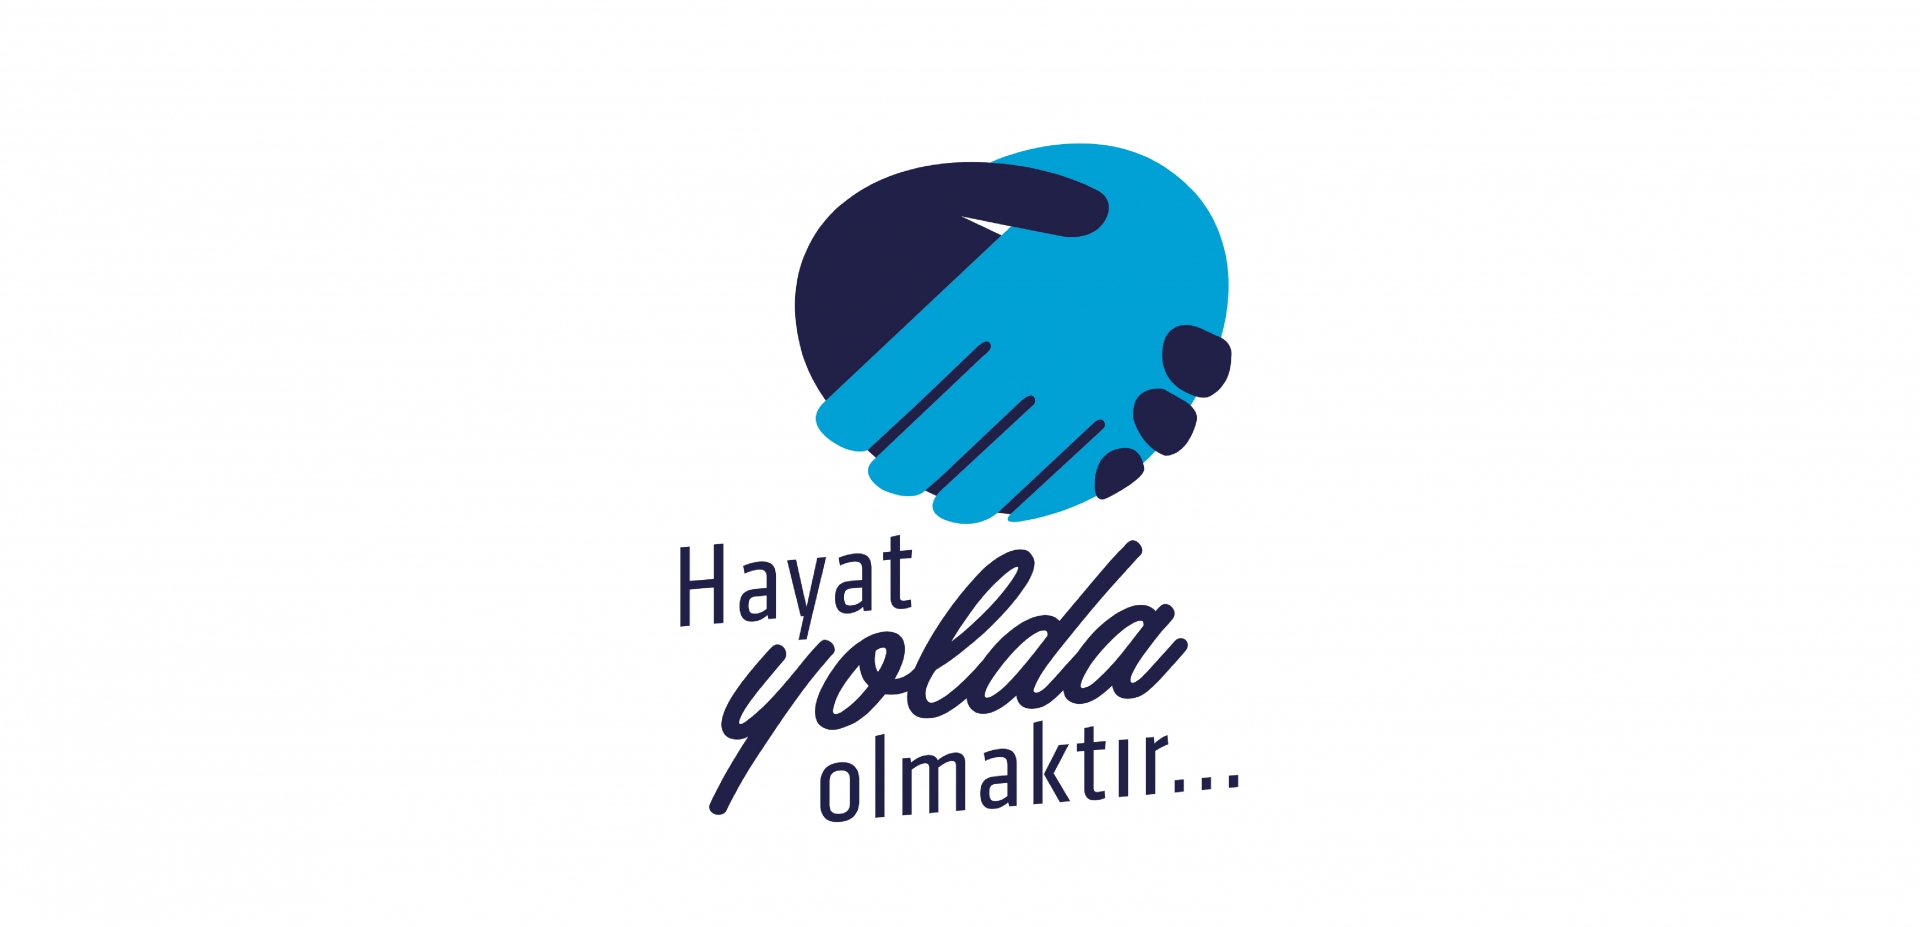 Büyükkarcı - KONSEPTIZ Advertising Agency in Turkey